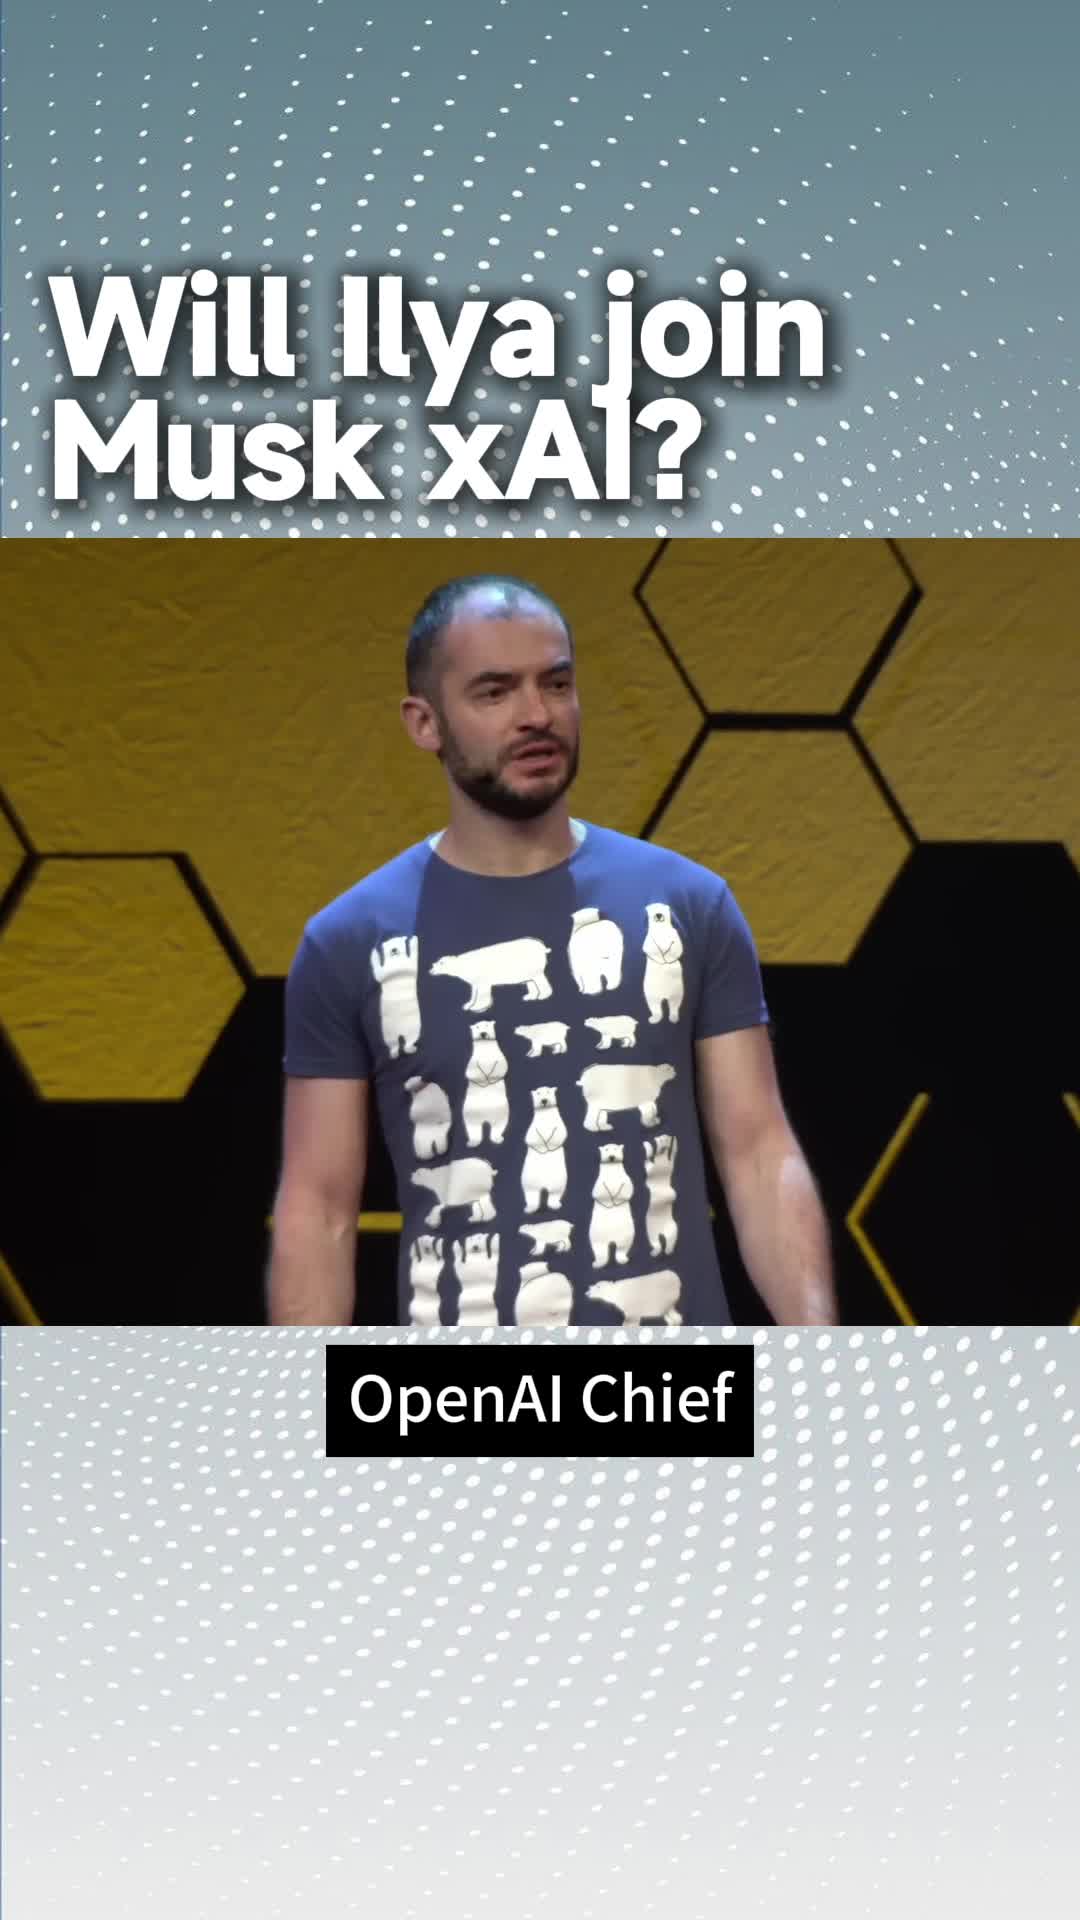 Will Ilya join Musk xAI?